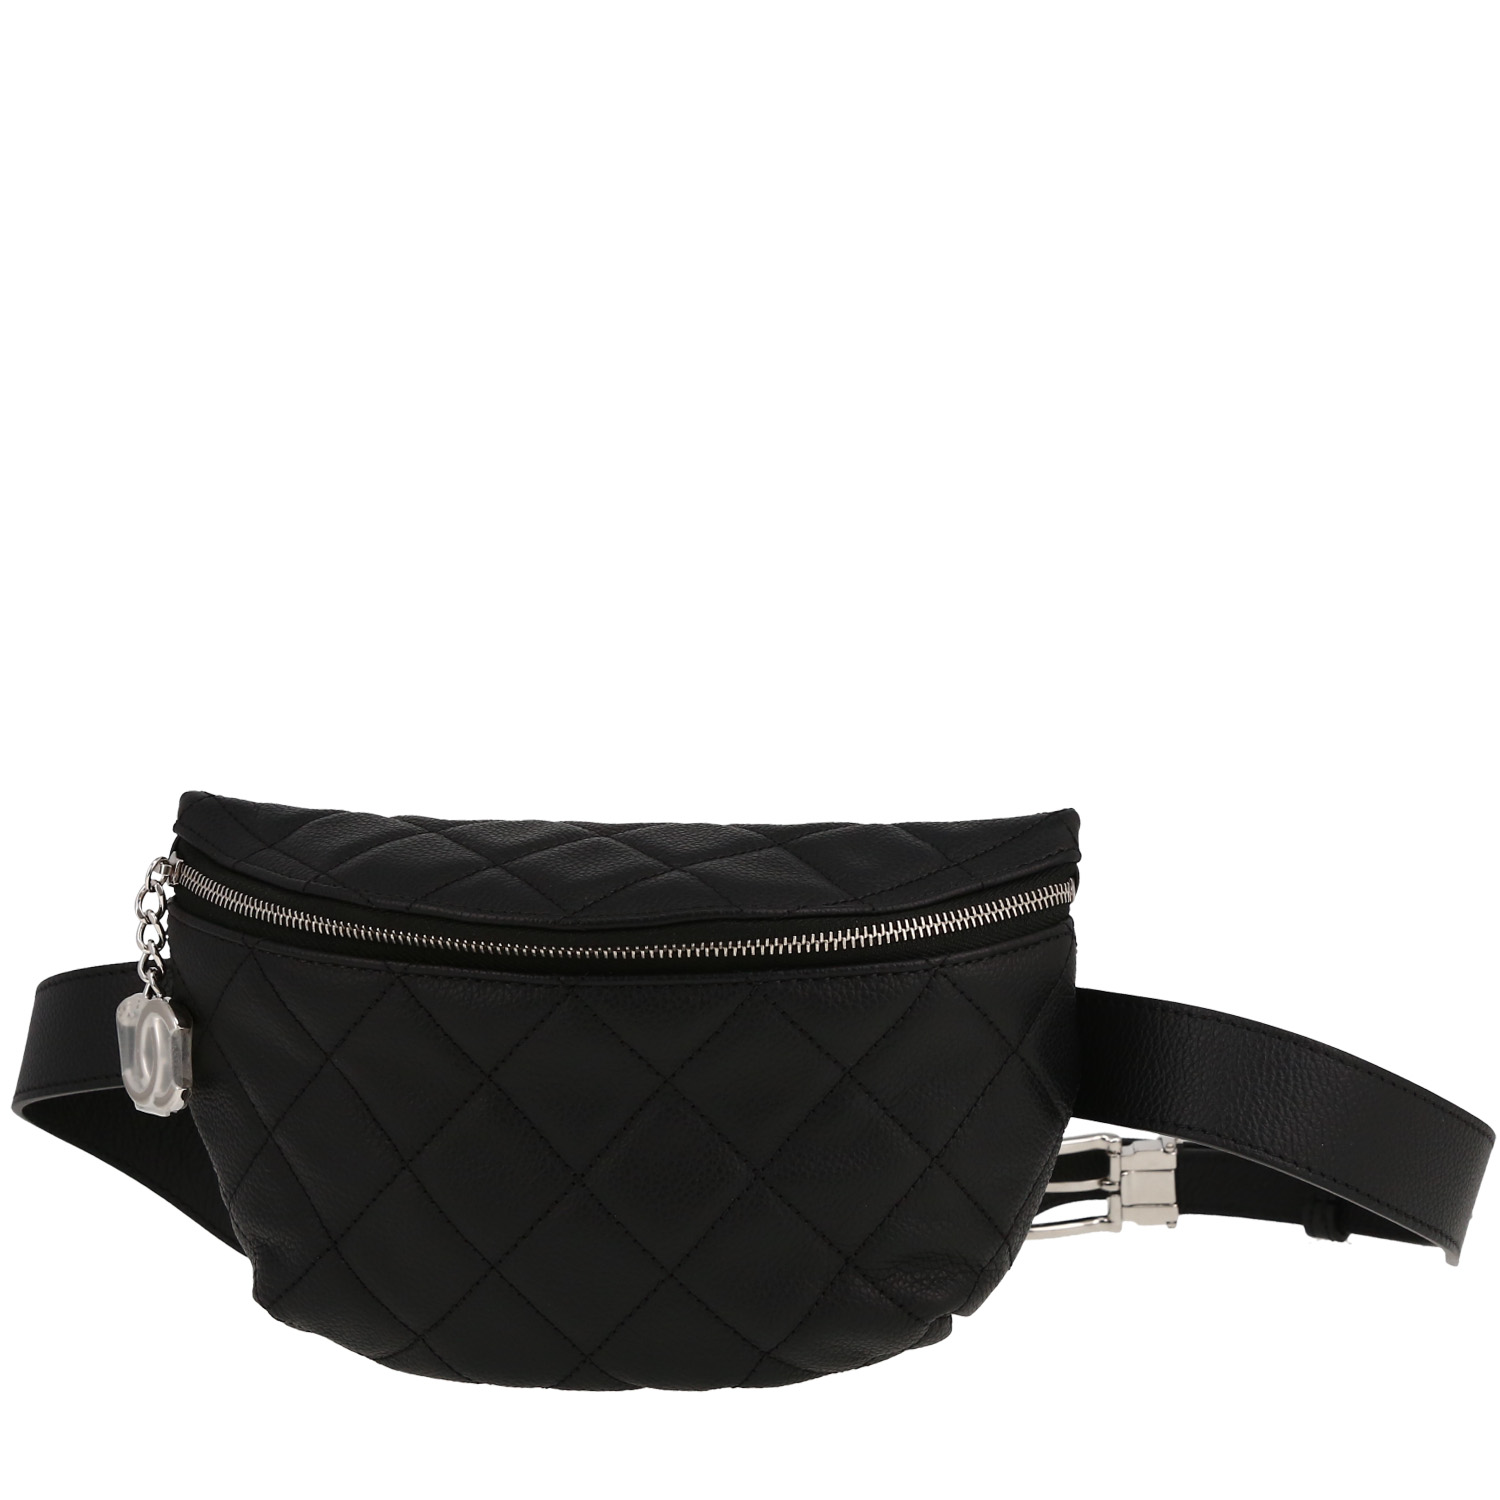 coco chanel belt bag black